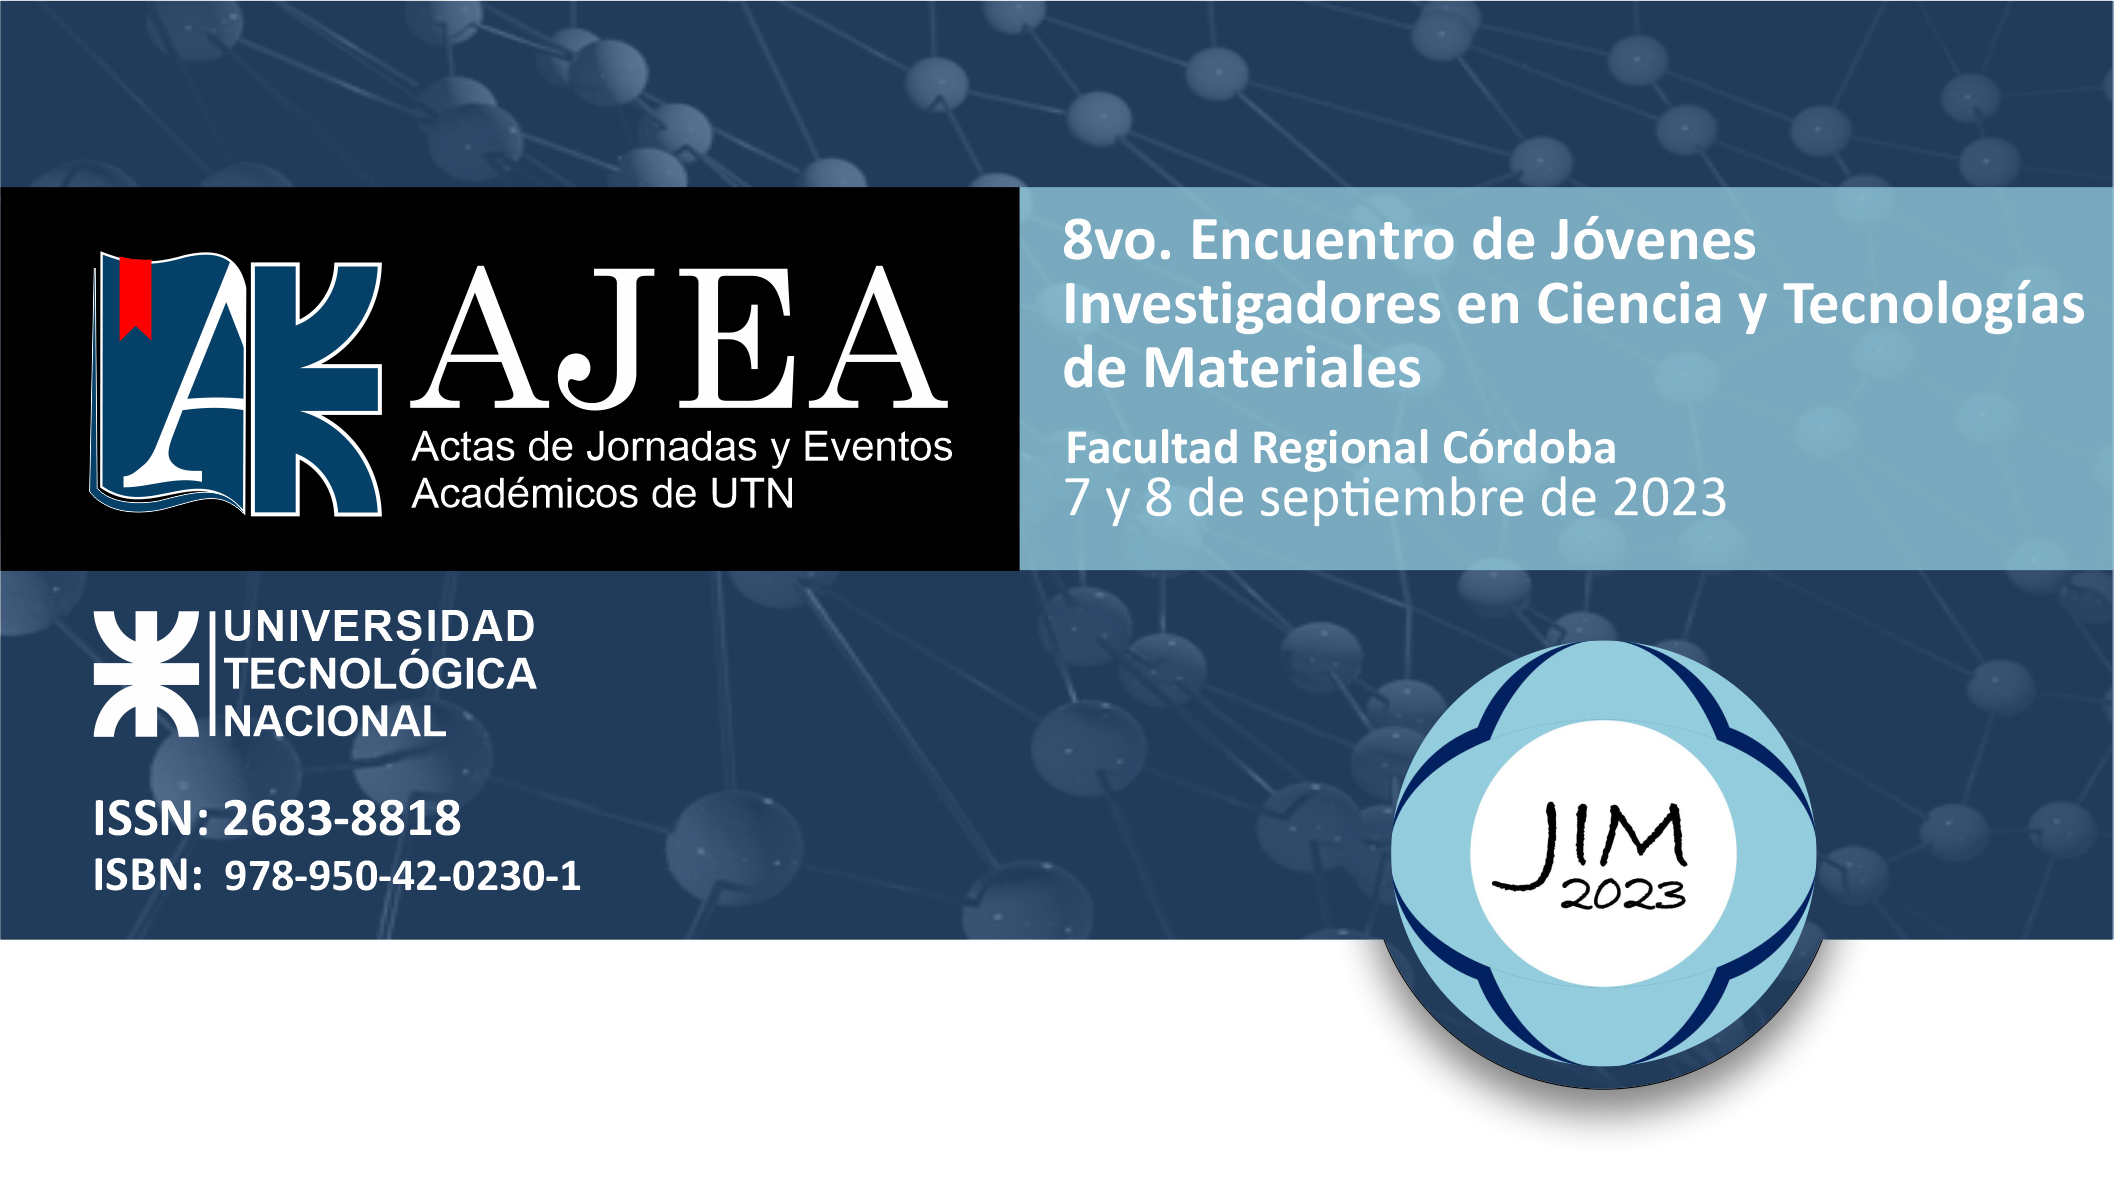                     Ver Núm. 25 (2023): 8vo. Encuentro de Jóvenes  Investigadores en Ciencia y Tecnologías  de Materiales - JIM 2023
                